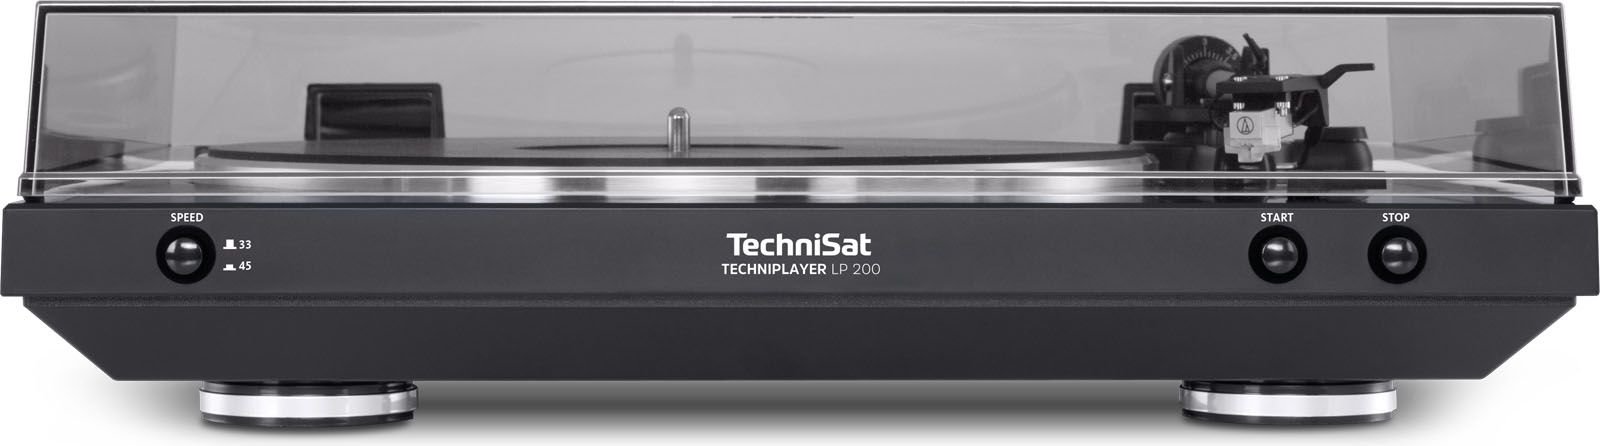 Technisat TechniPlayer LP 200 radio, radiopulksteņi